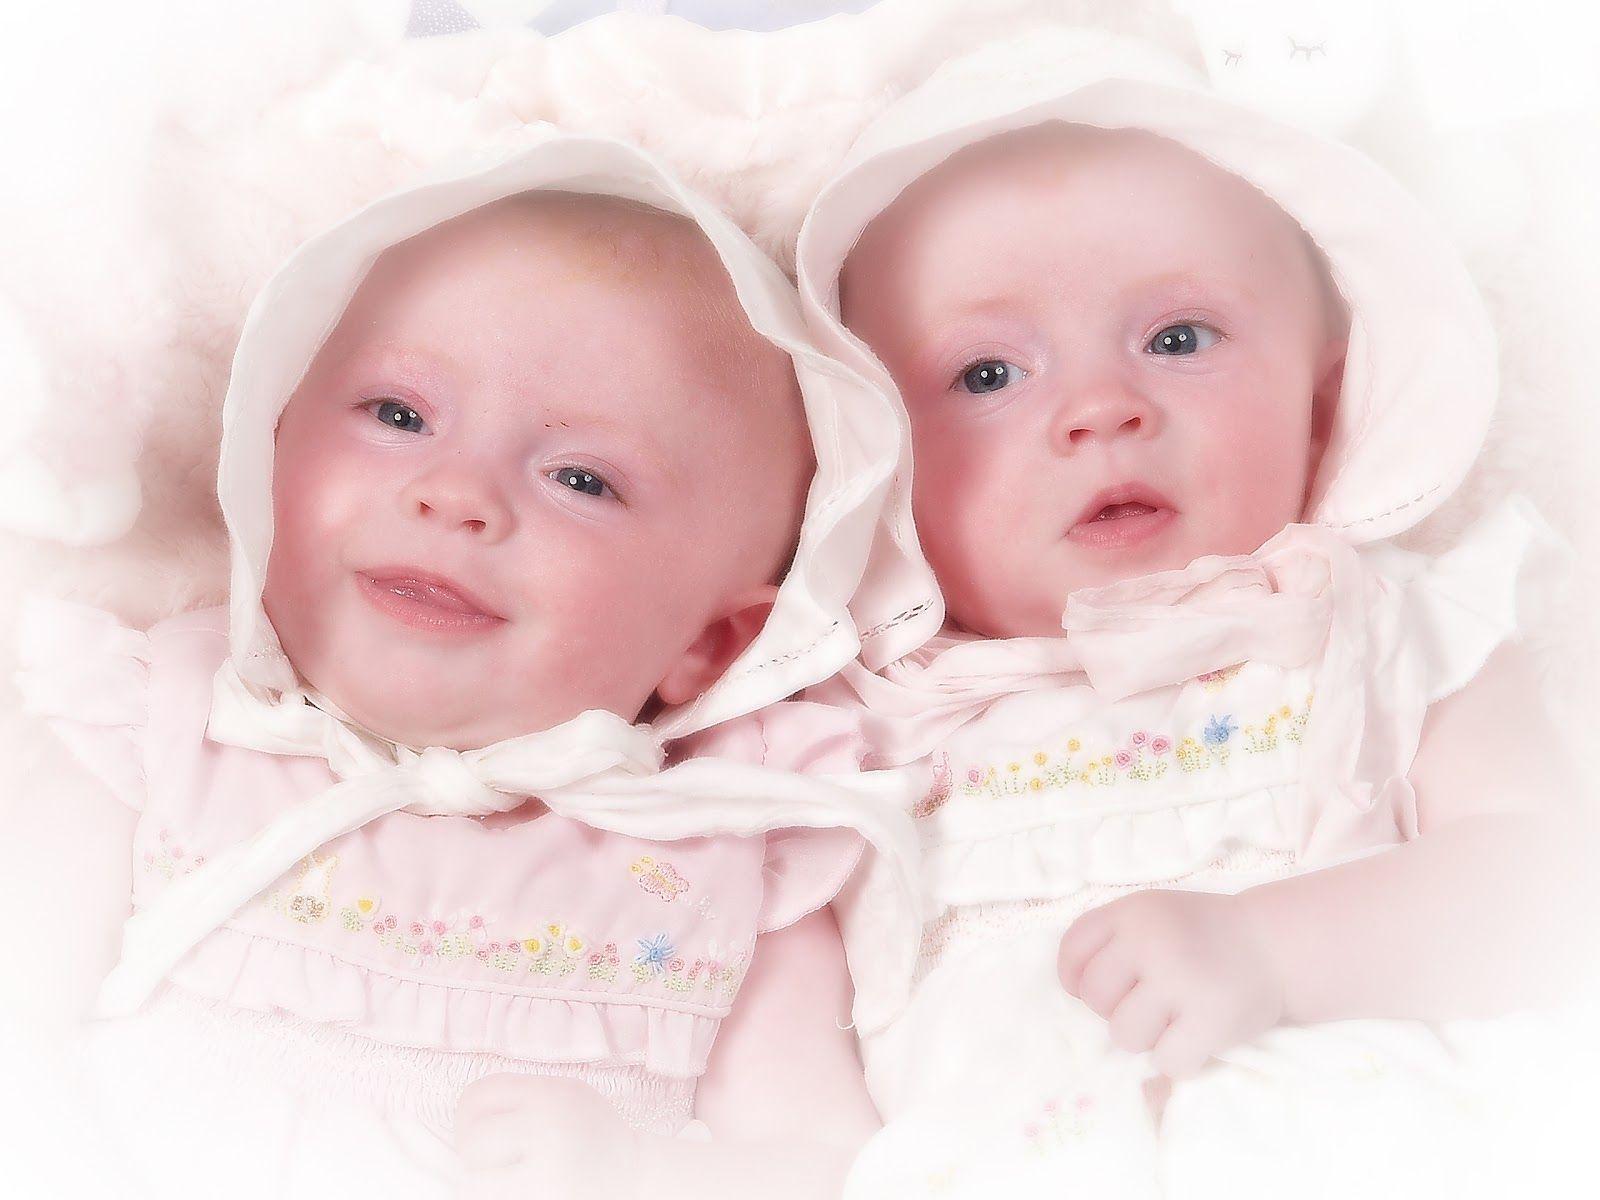 Share 63+ cute twins baby wallpaper - 3tdesign.edu.vn